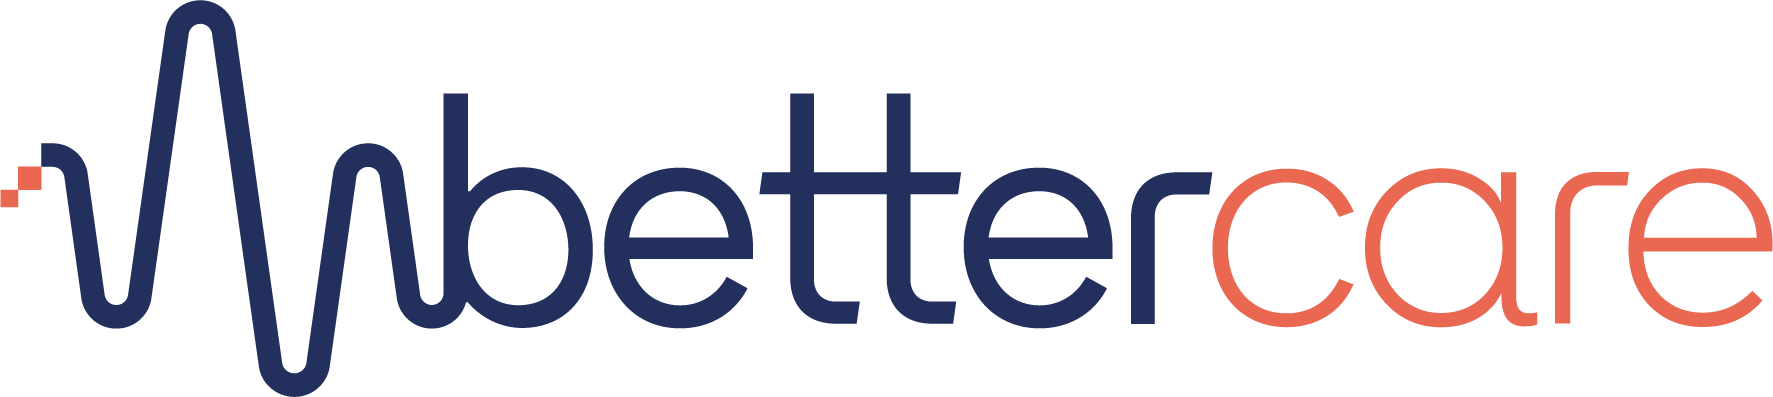 better care logo